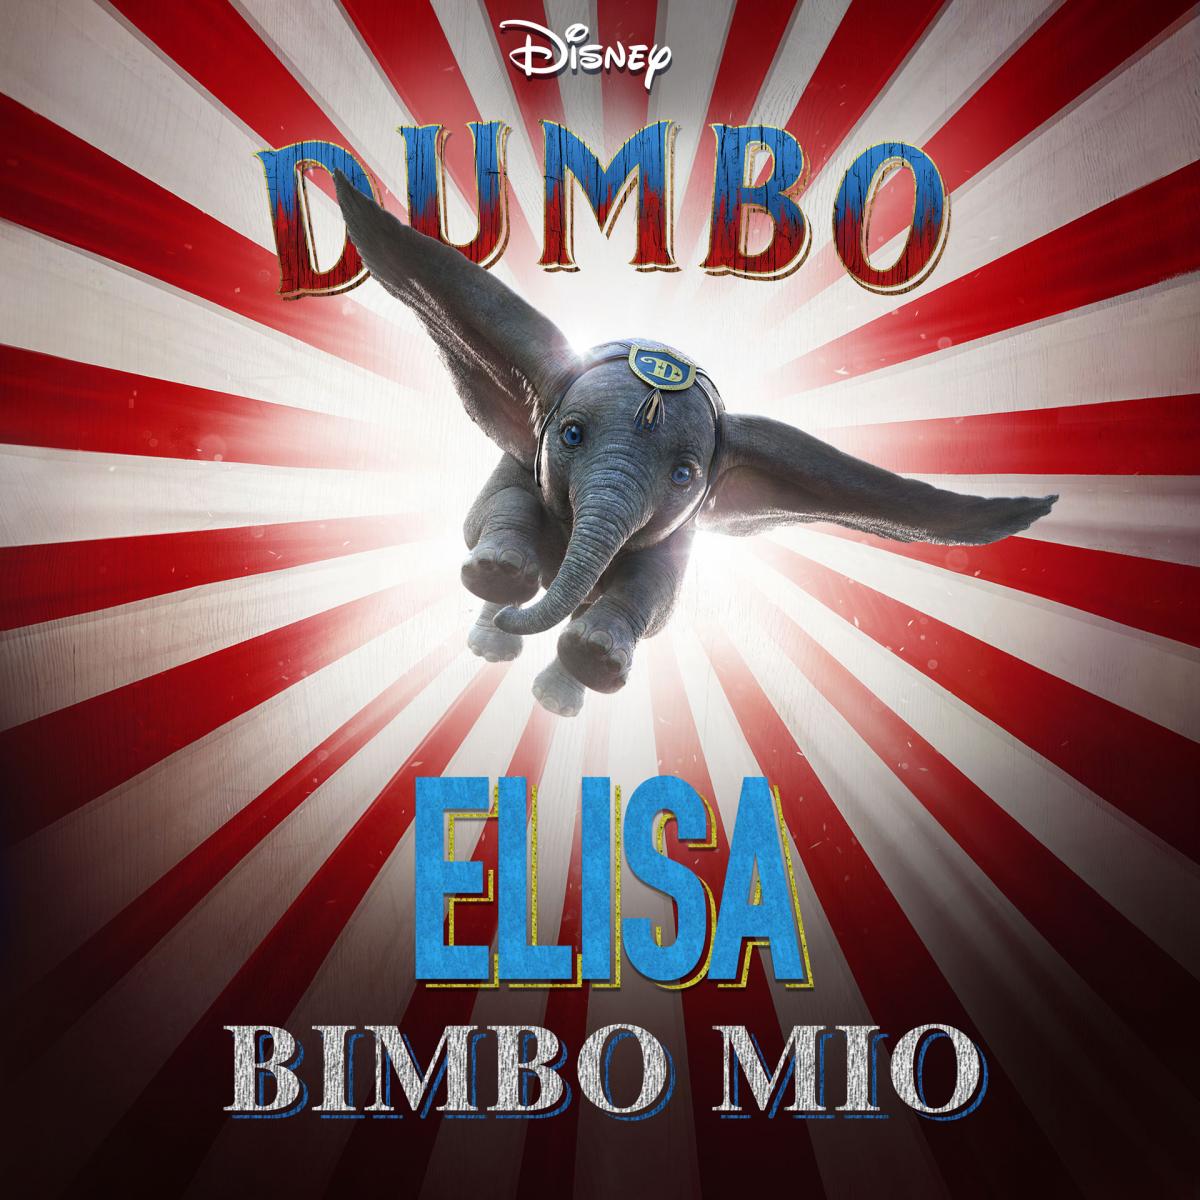 La voce di Elisa per Dumbo, il film Disney live action